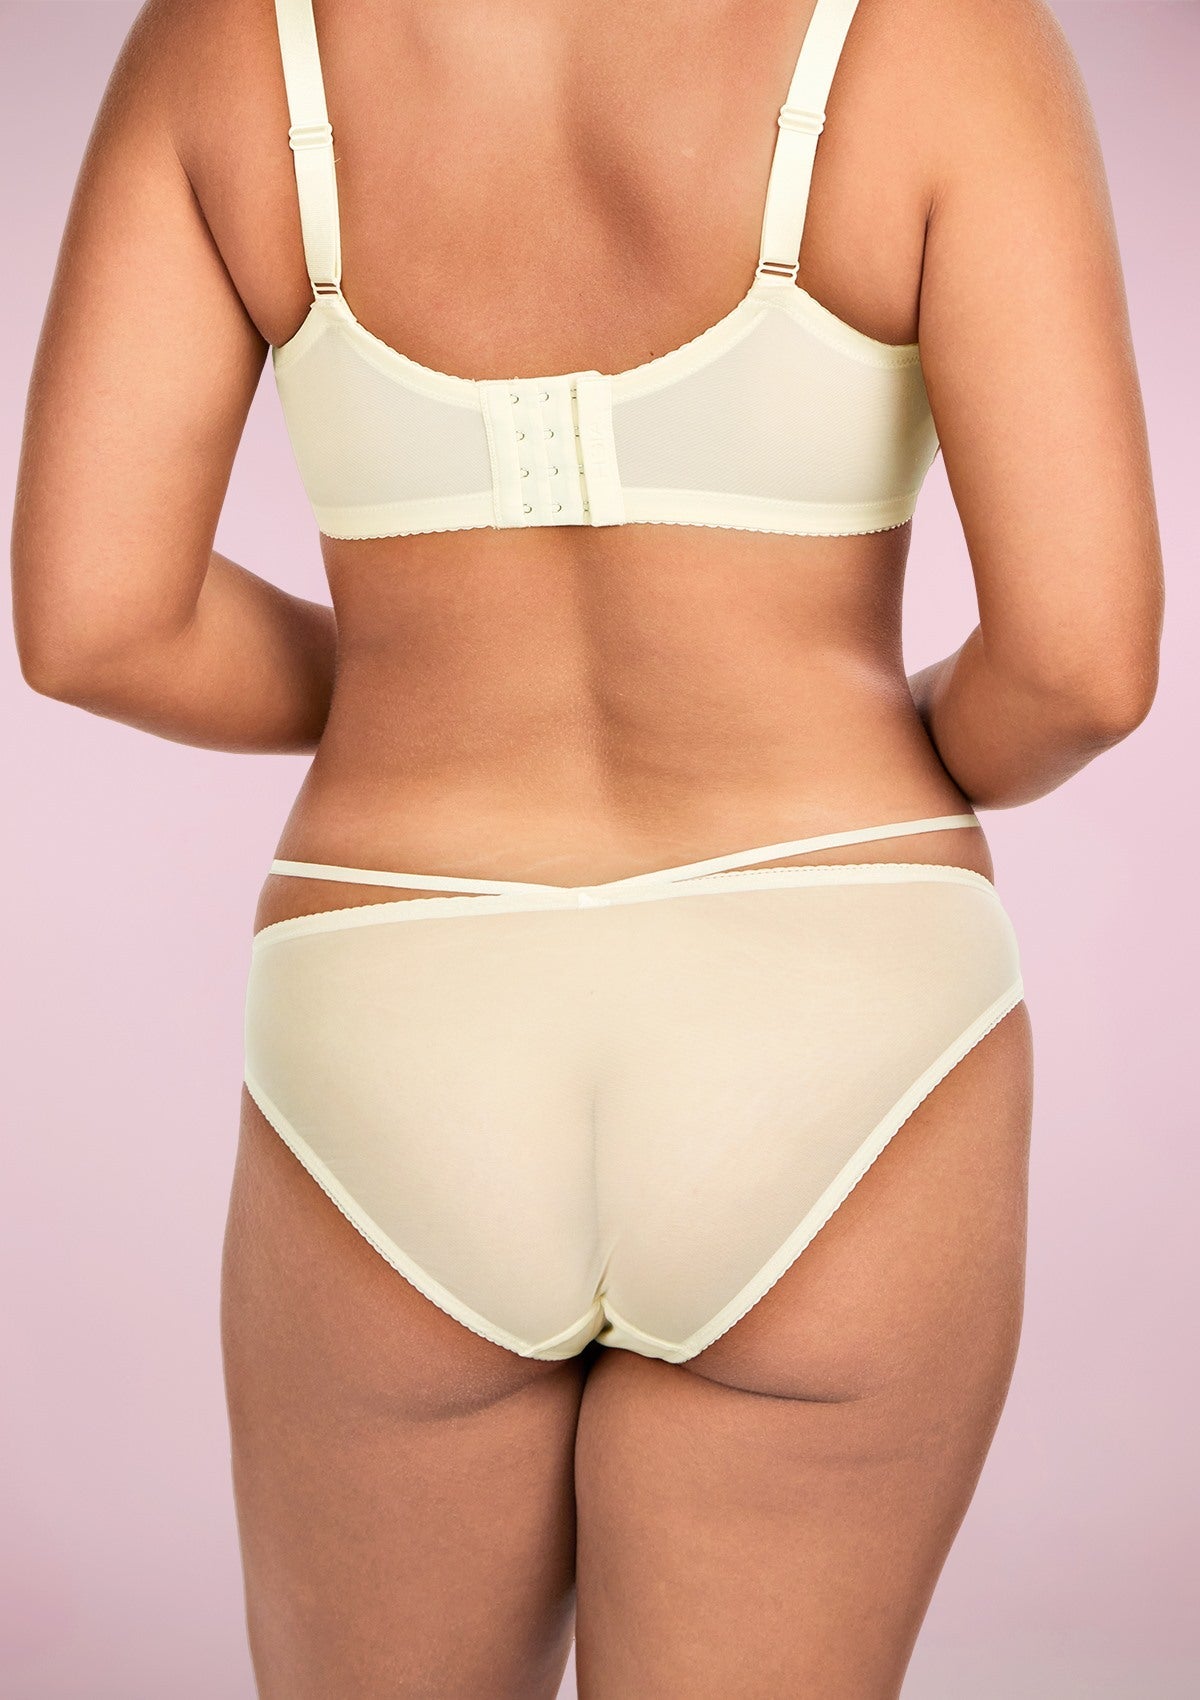 HSIA Breathable Sexy Feminine Lace Mesh Bikini Underwear - M / Champagne